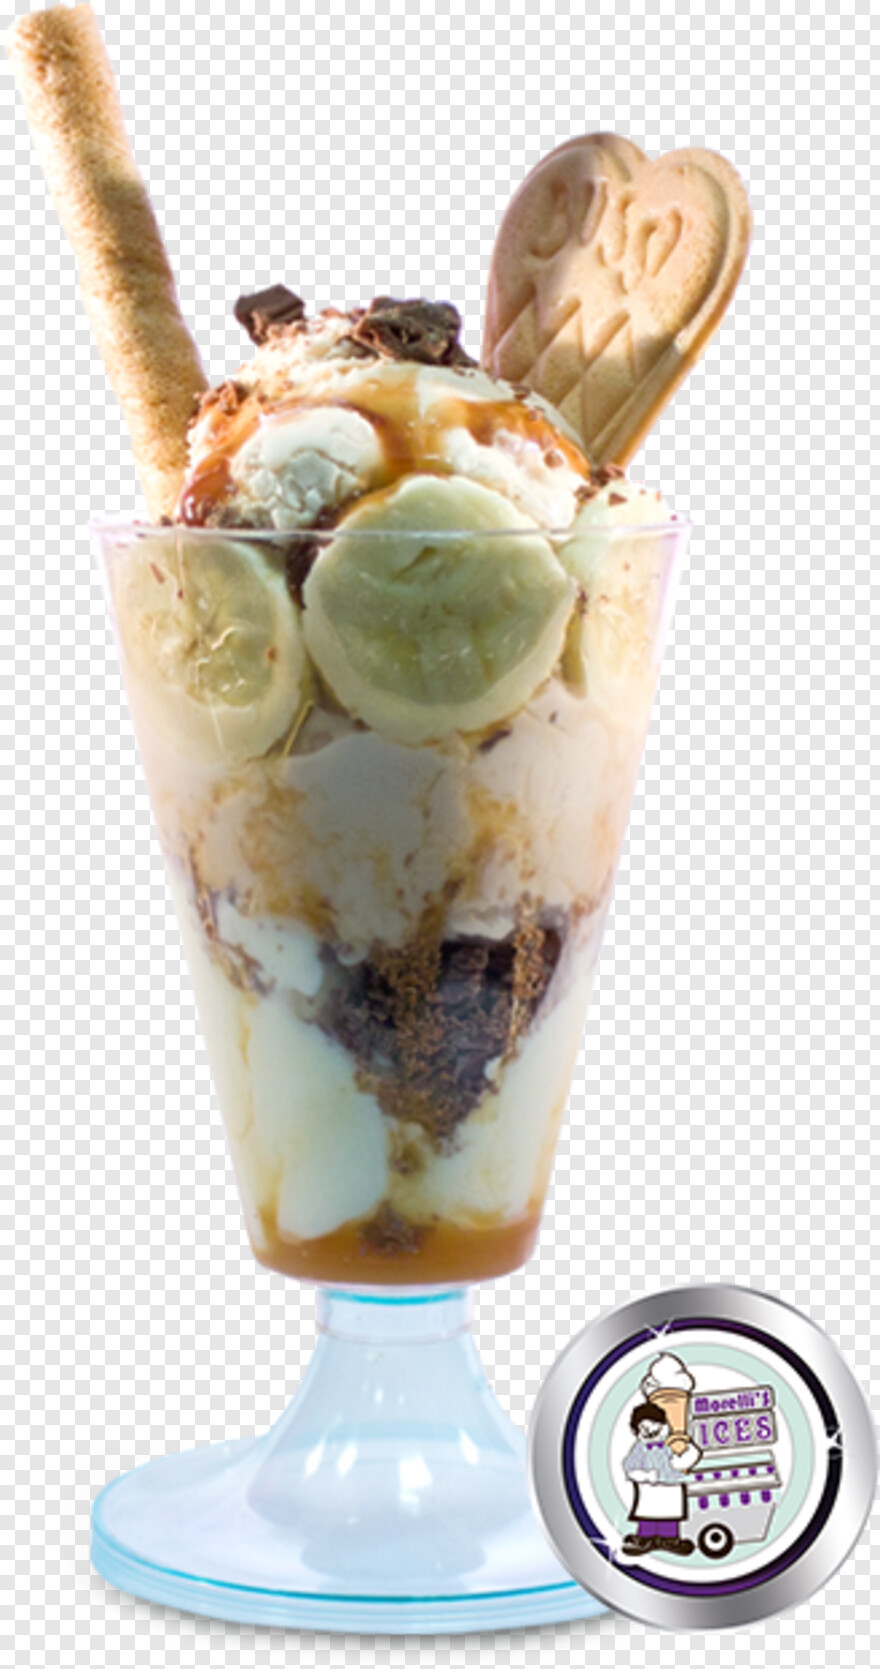 ice-cream-sundae # 608610